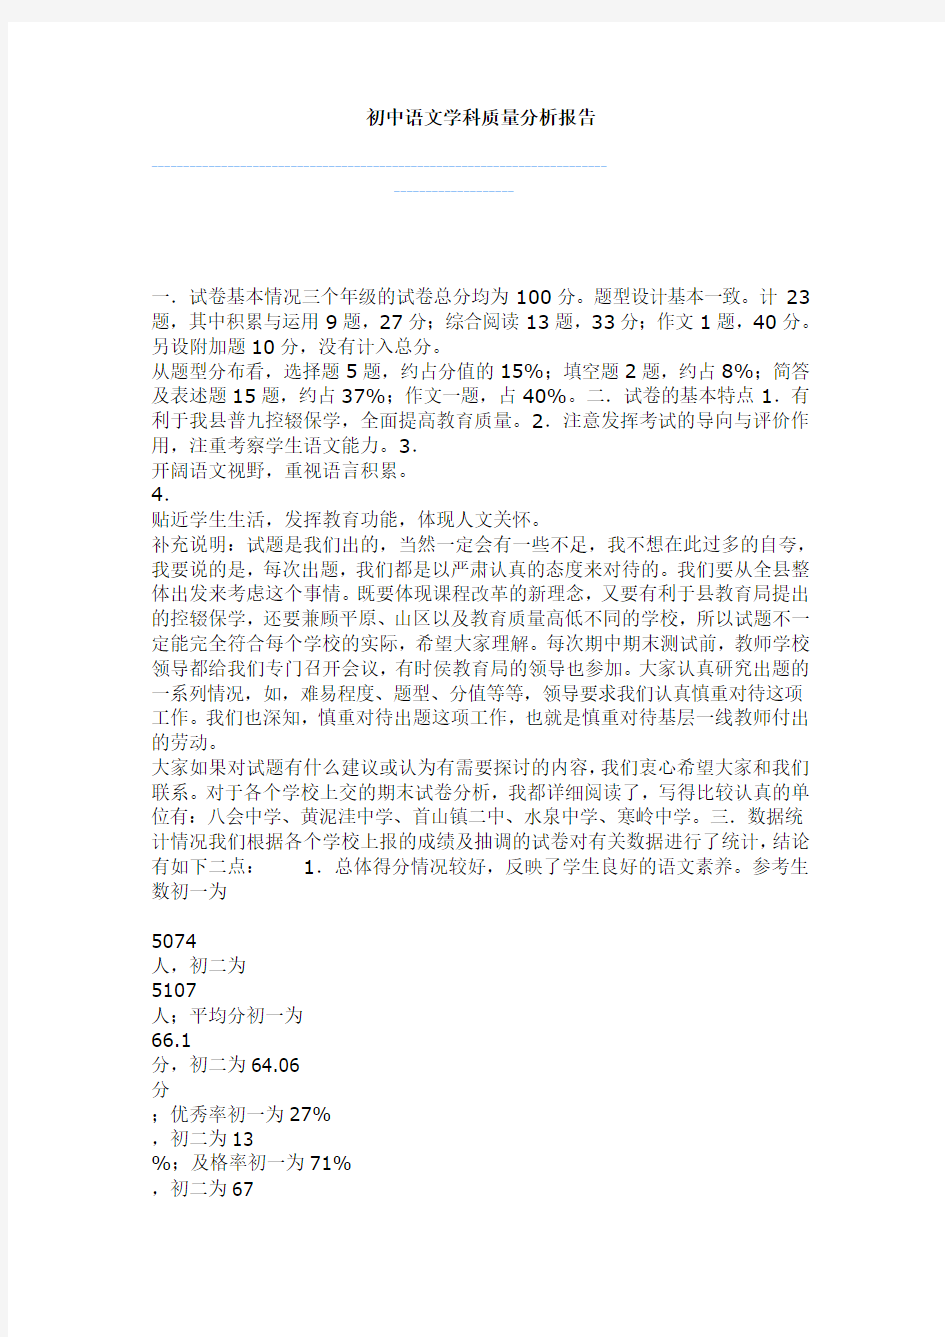 (完整)初中语文学科质量分析报告